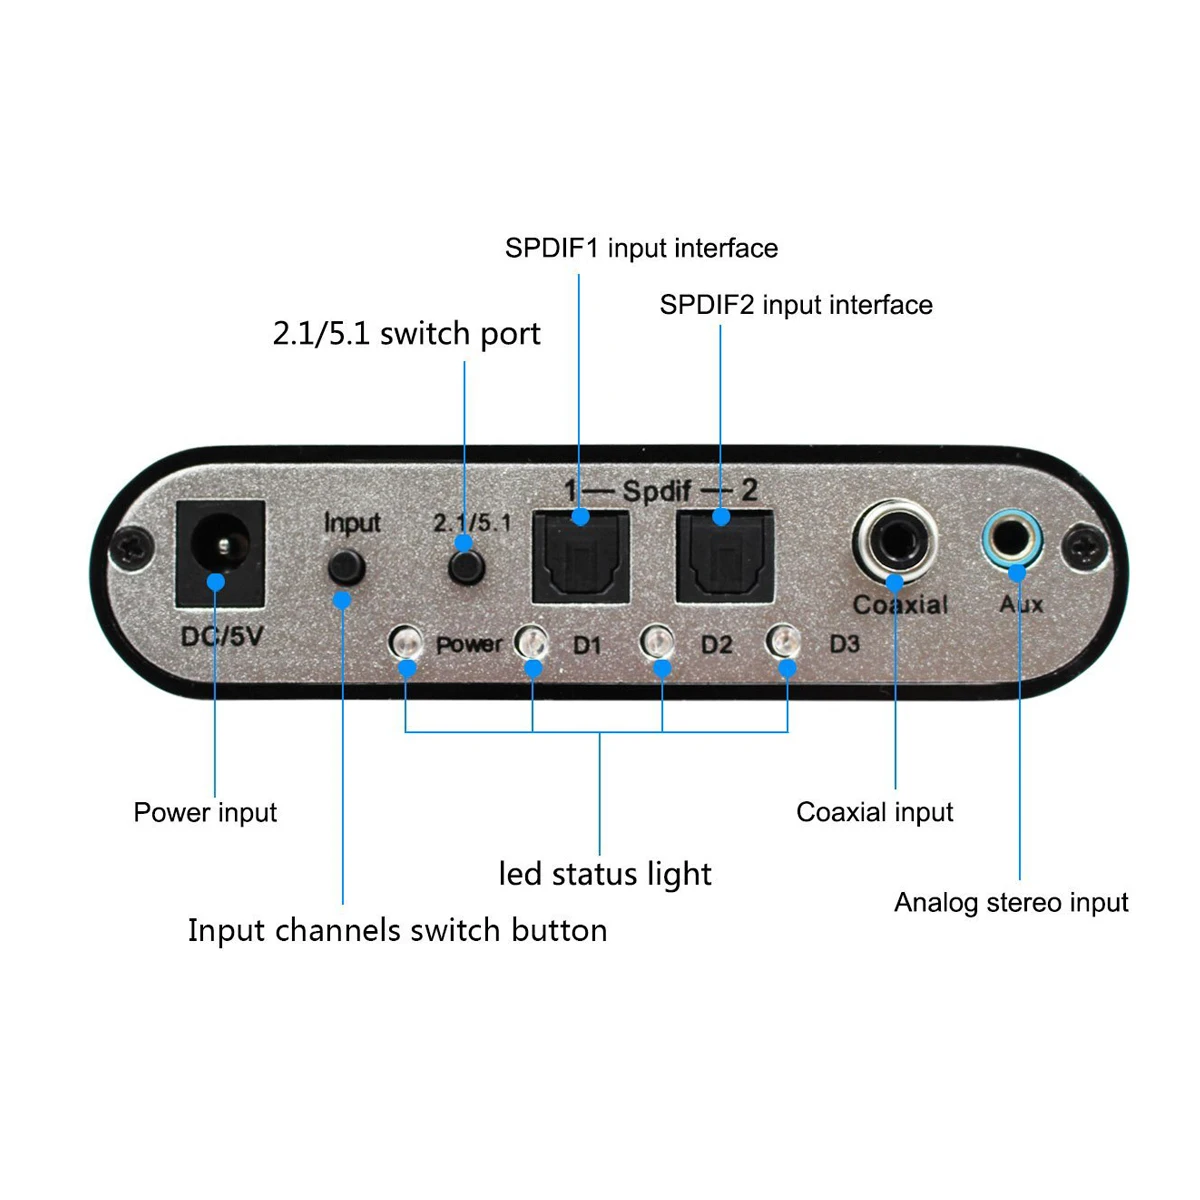 Аудиодекодер 5.1 Digital AC3 с оптическим преобразованием в аналоговый стереофонический объемный HD 2 порта SPDIF HD Audio Rush для HD-плееров/DVD/ XBOX360